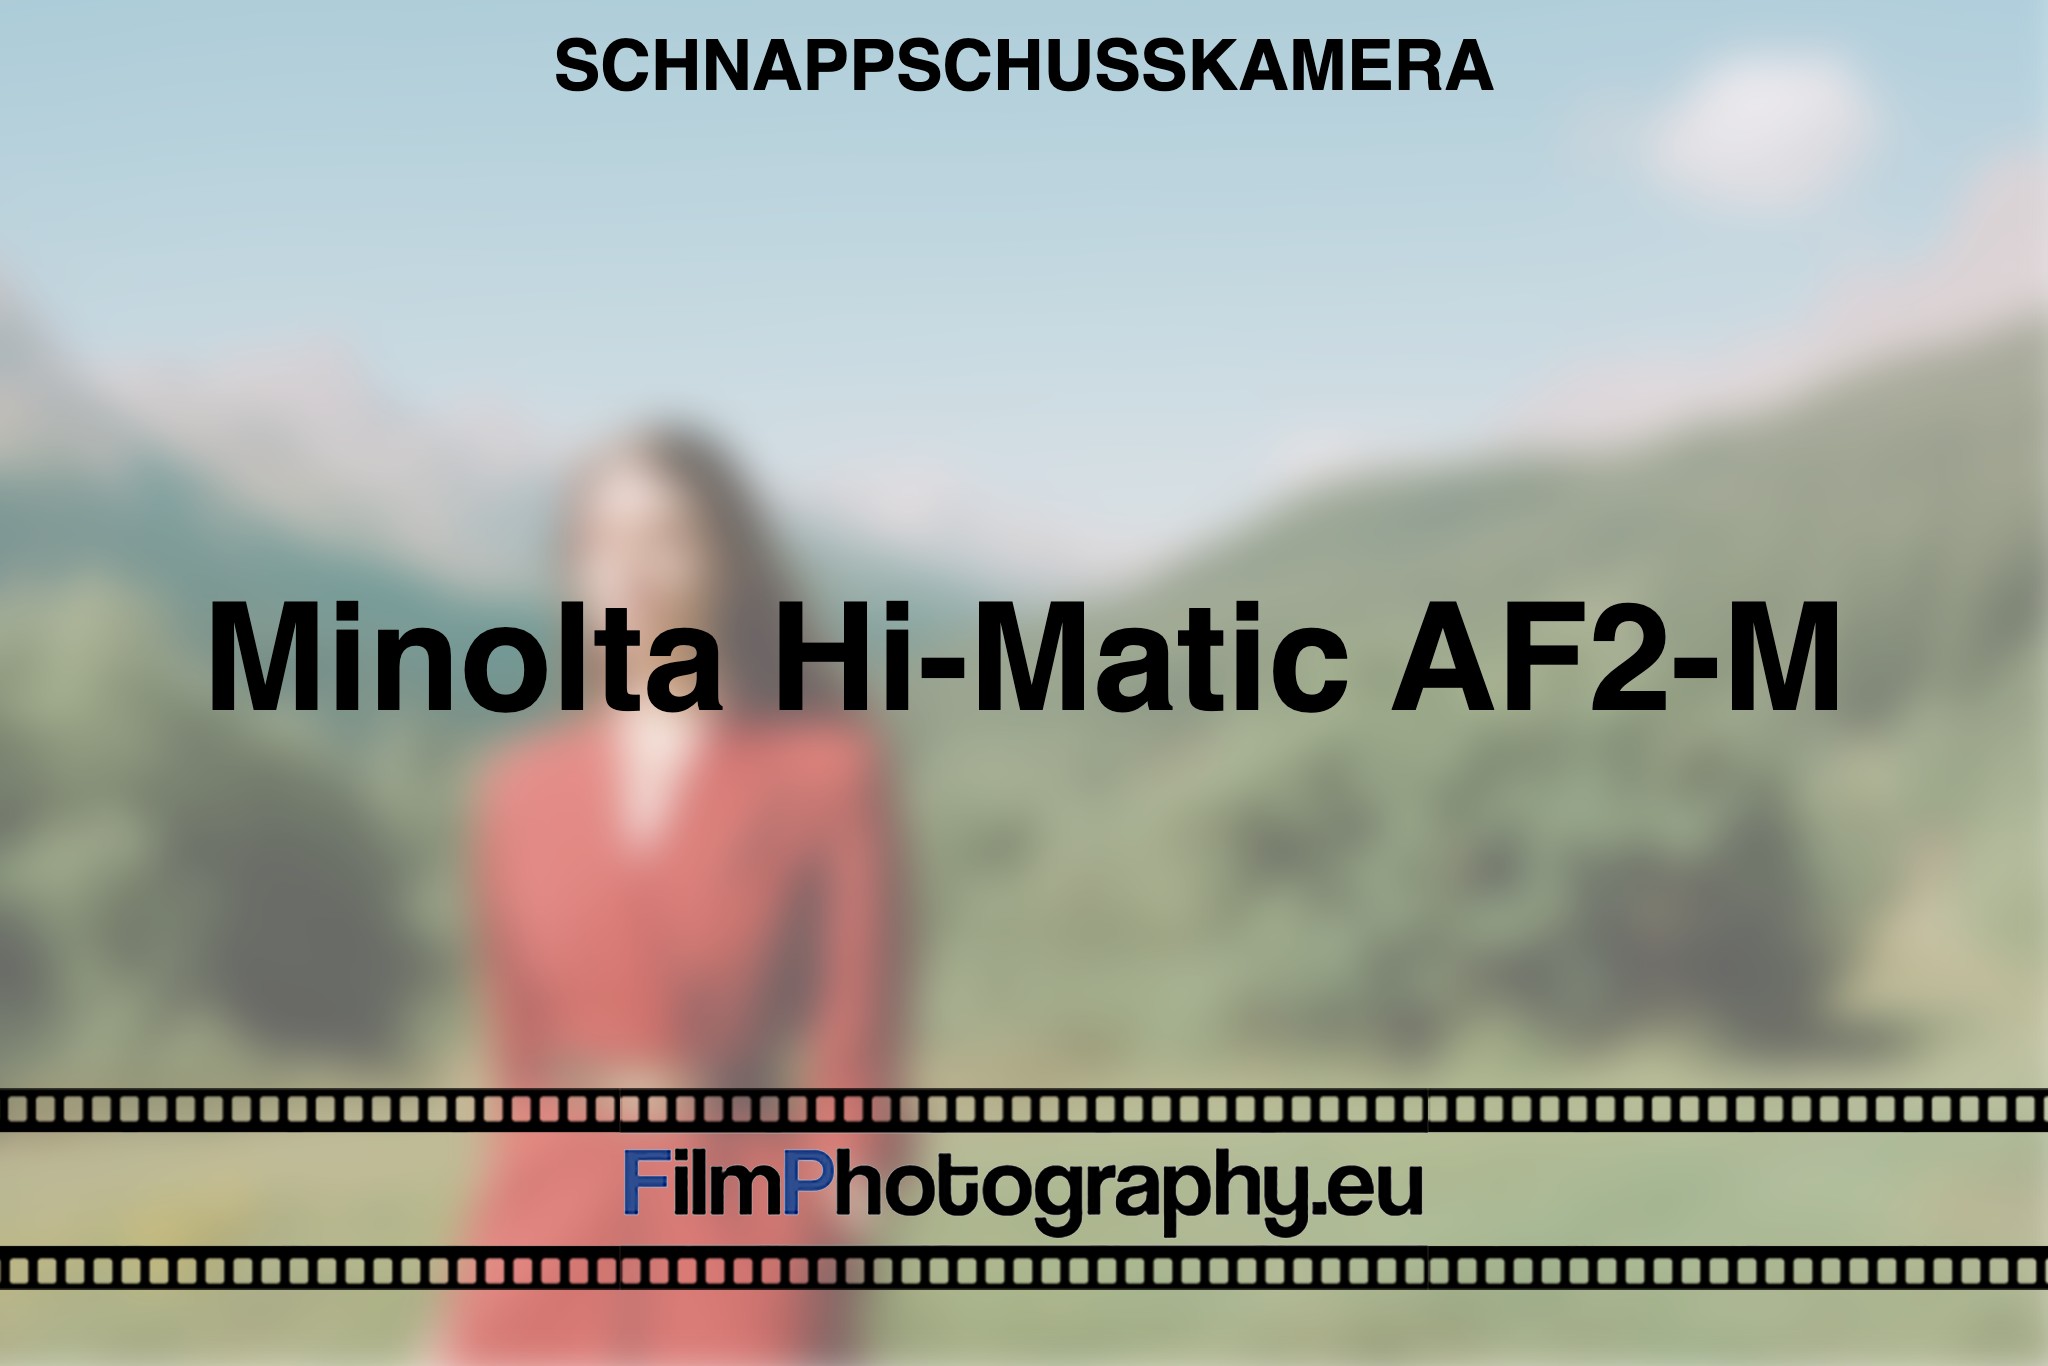 minolta-hi-matic-af2-m-schnappschusskamera-bnv